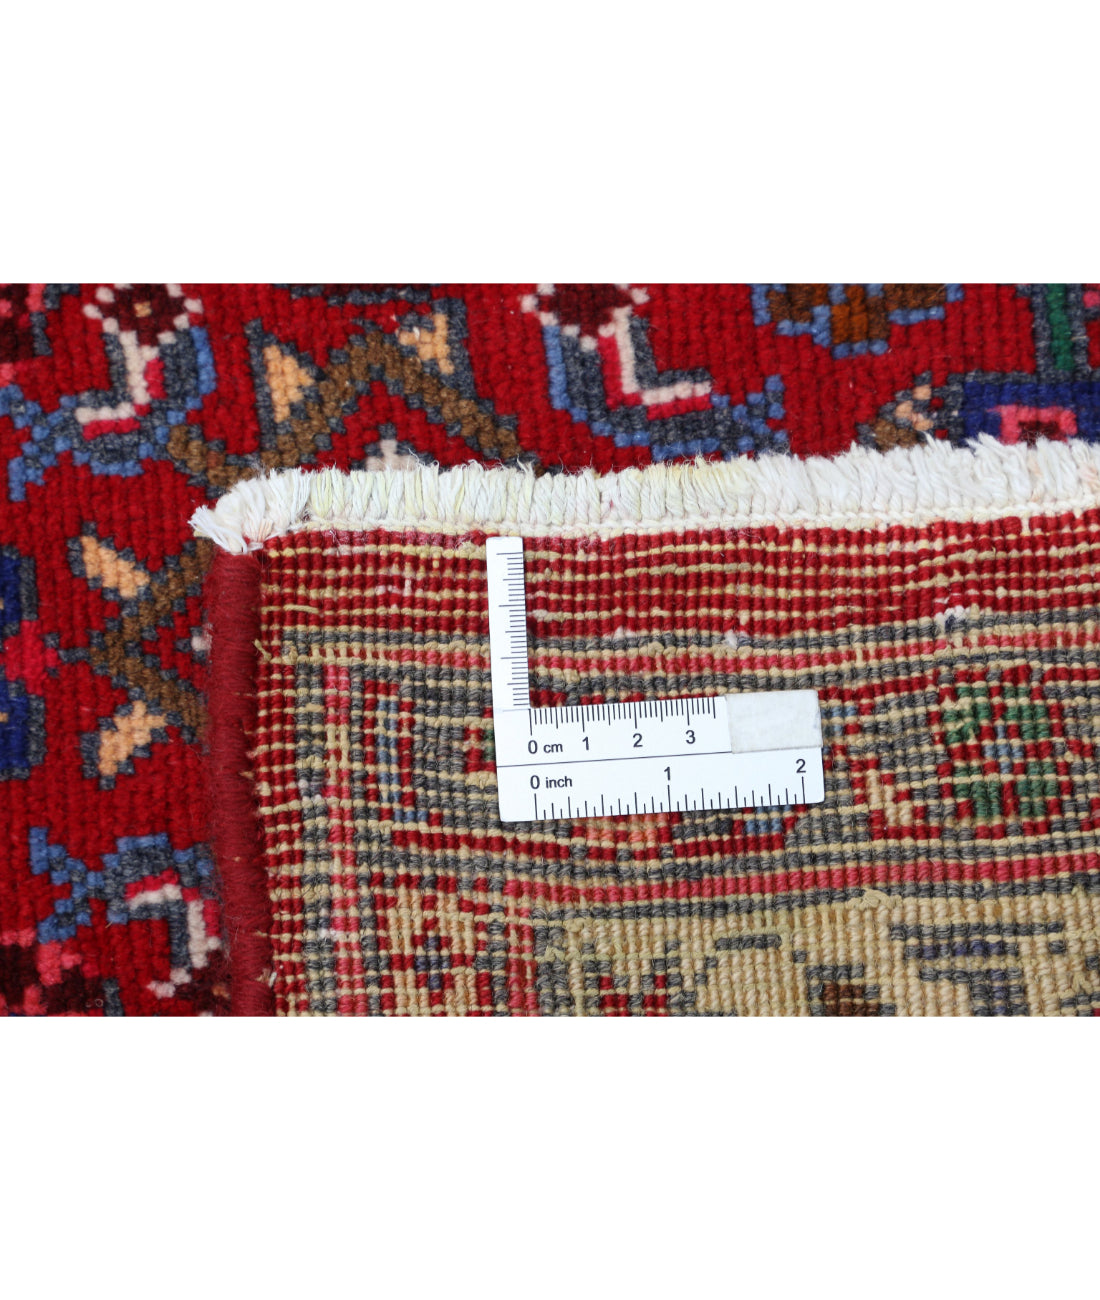 Hand Knotted Persian Bijar Wool Rug - 6'9'' x 11'6'' 6'9'' x 11'6'' (203 X 345) / Red / Blue